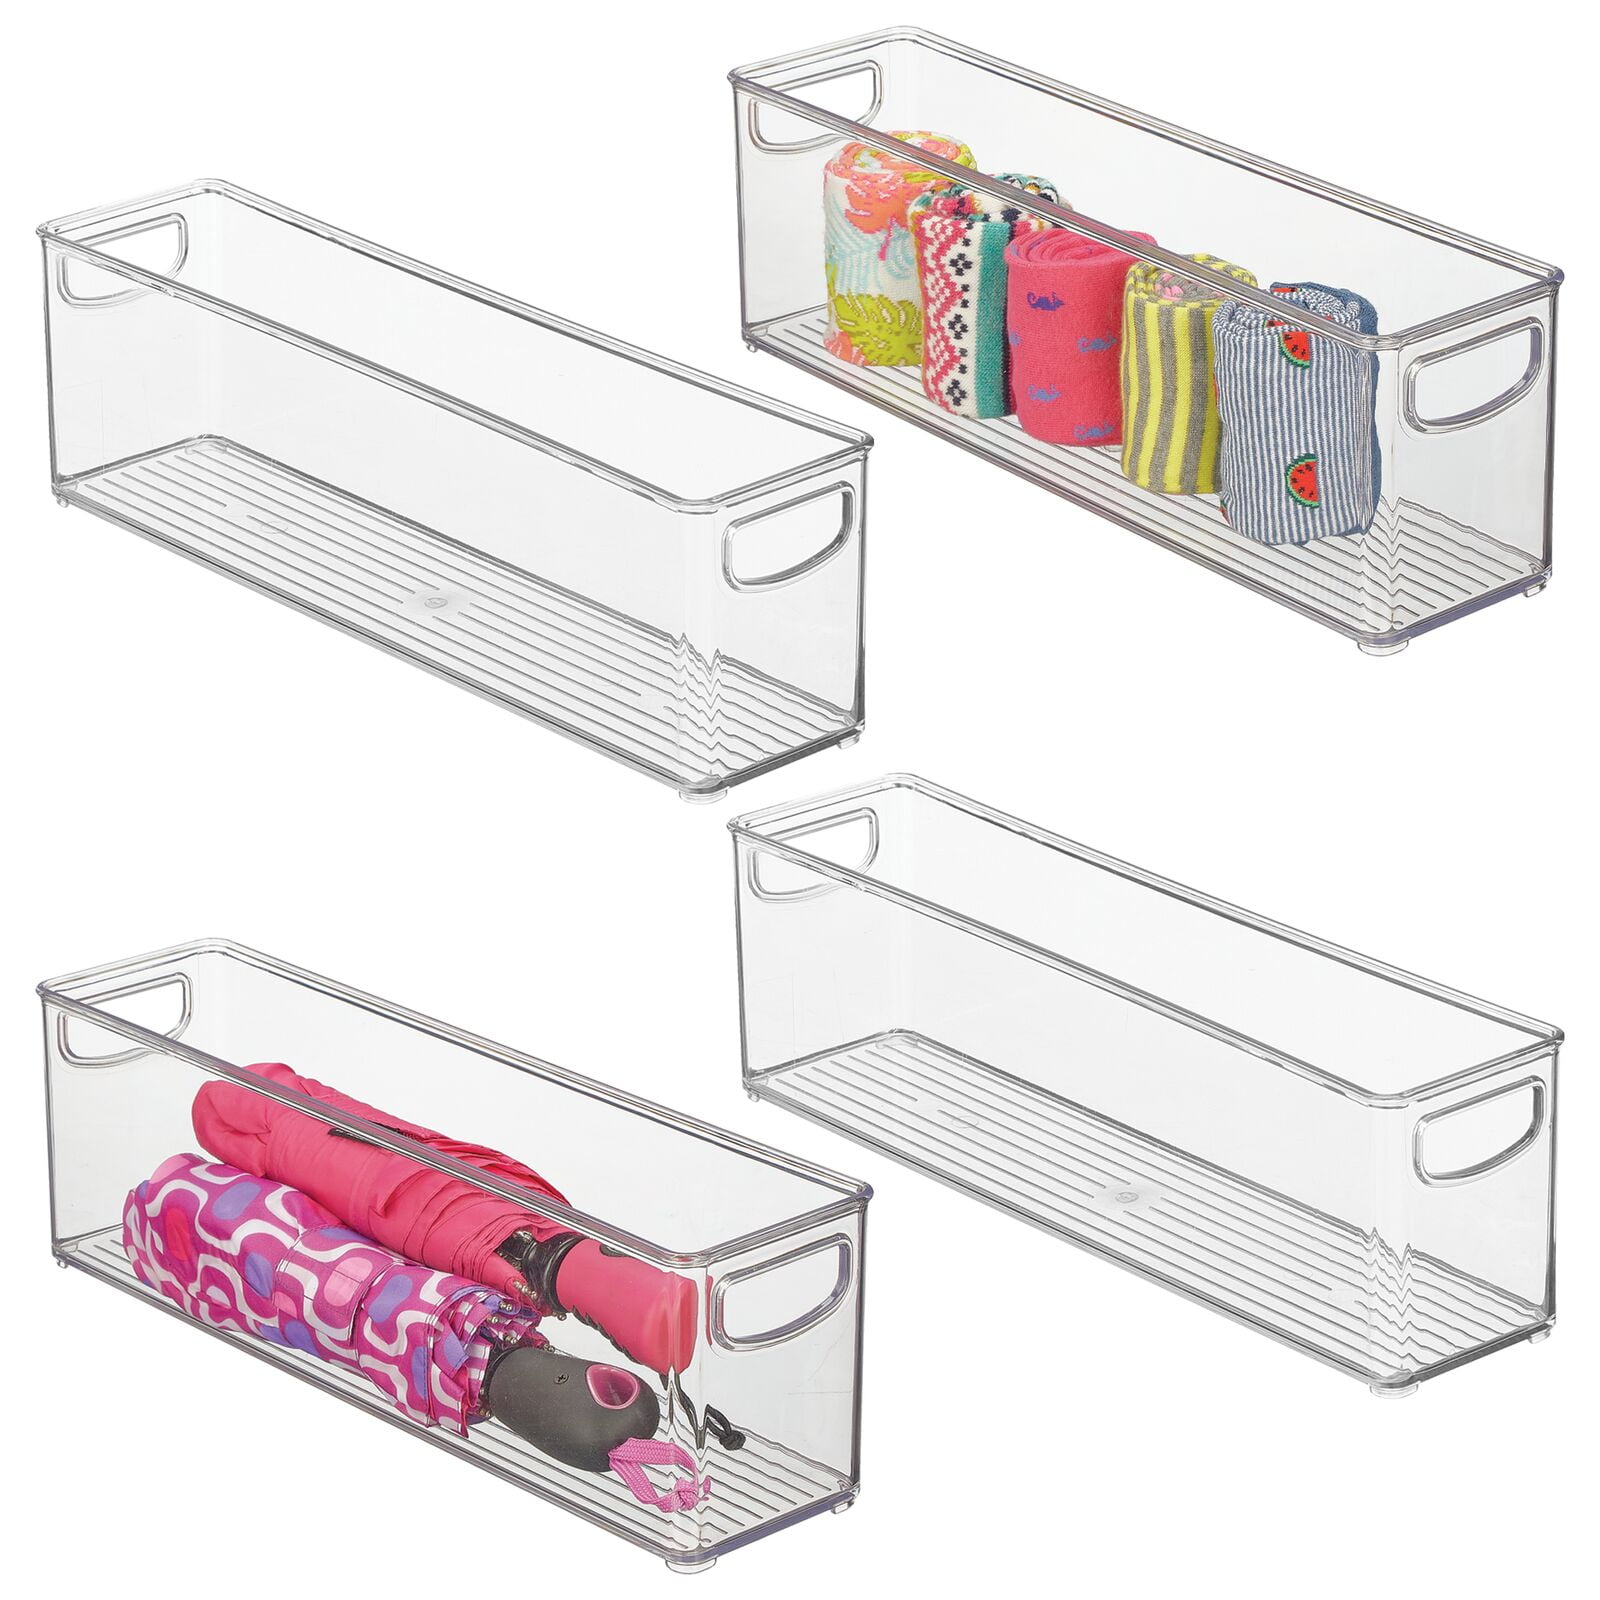 mDesign Plastic Closet Shelf Dividers Review